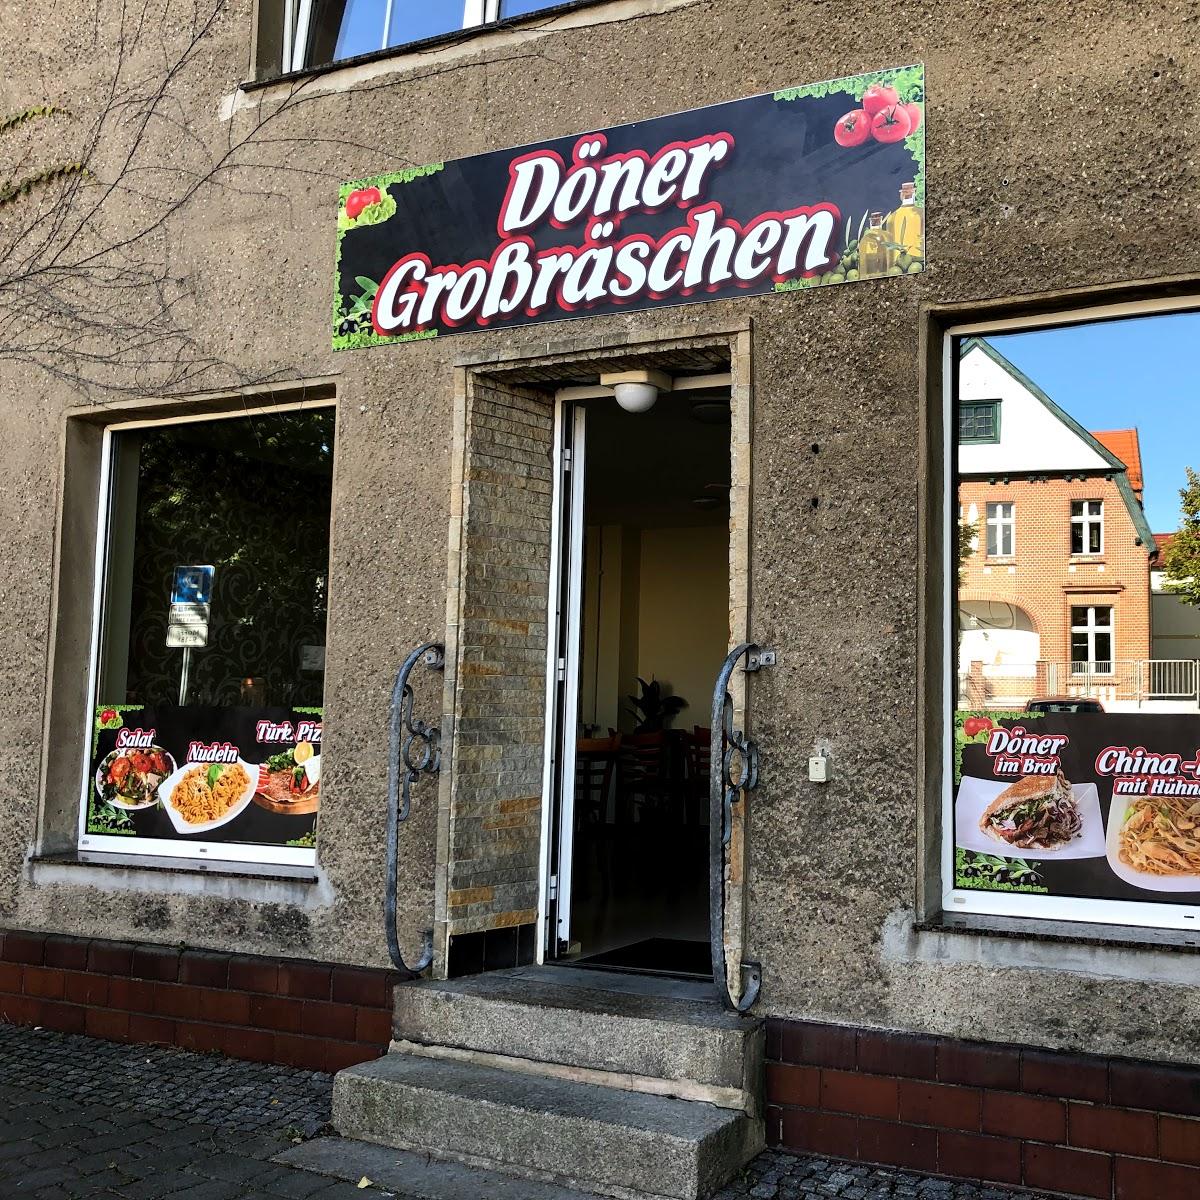 Restaurant "Döner" in Großräschen